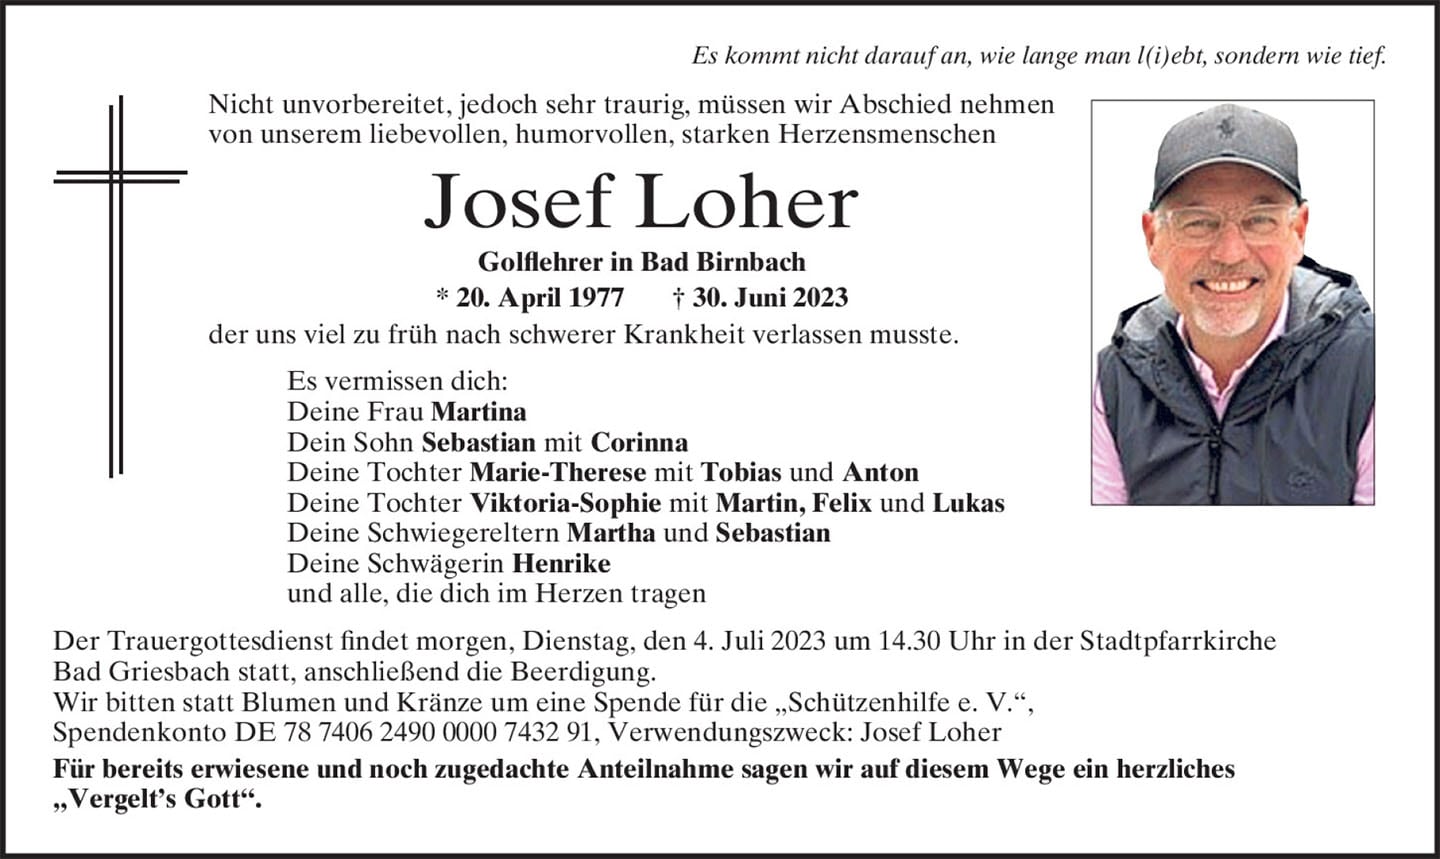 Traueranzeige Josef Loher